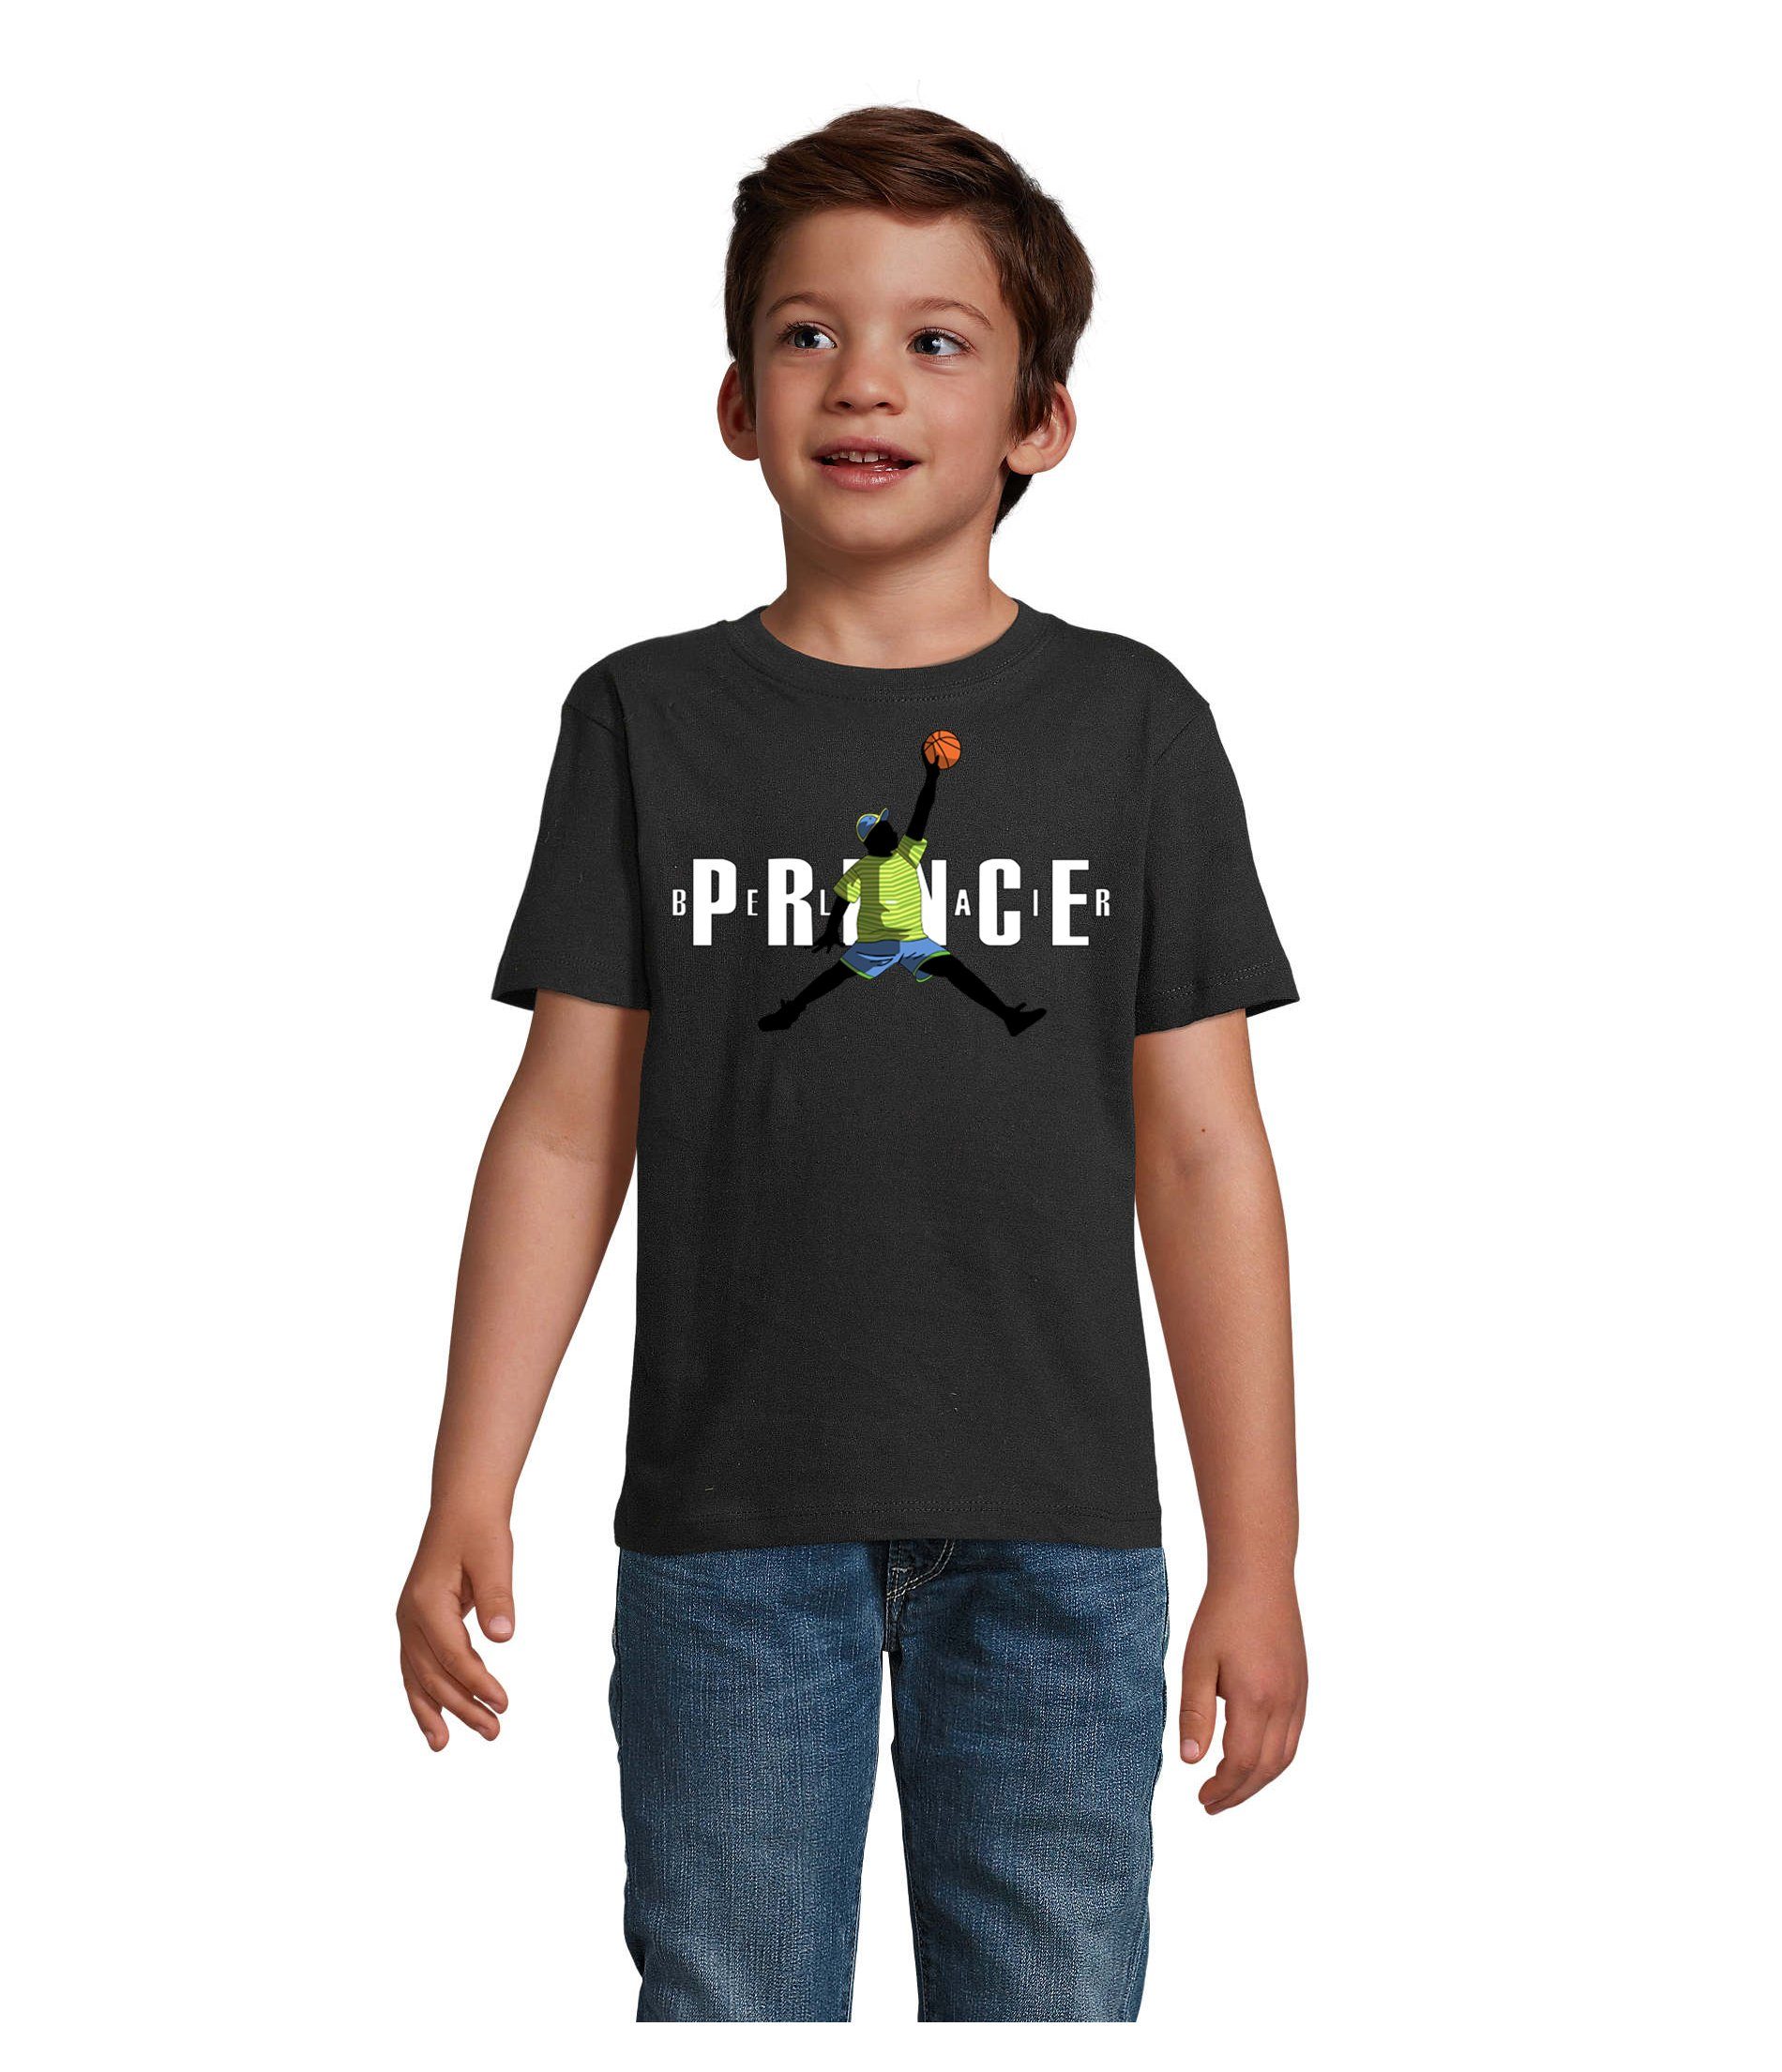 Blondie & Kinder T-Shirt Mädchen in Bel Basketball & Jungen Air Brownie Fresh Prince vielen Farben Schwarz